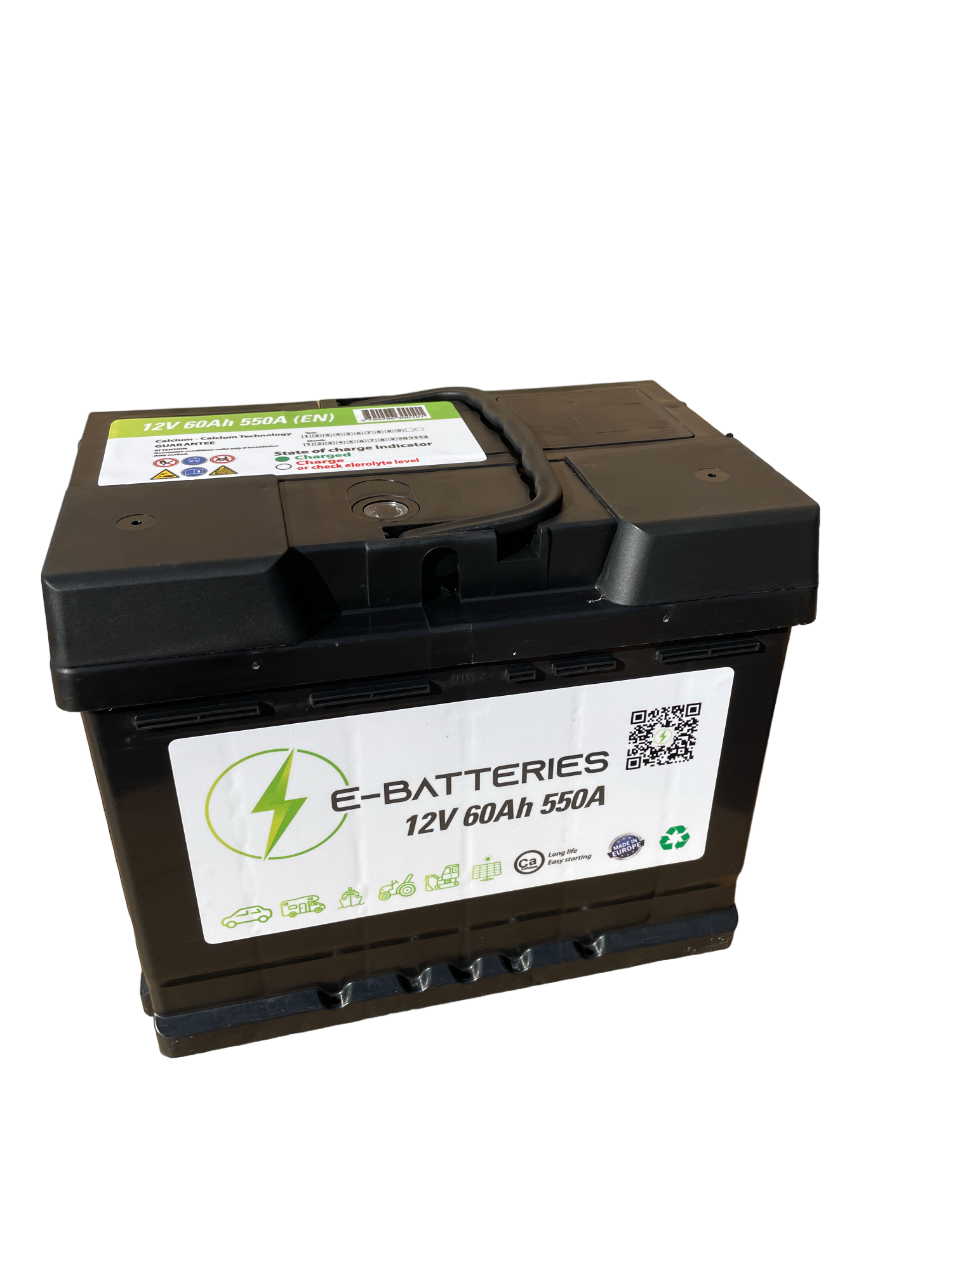 BATTERIE VOITURE L2 12V 60AH 550A - E-Batteries